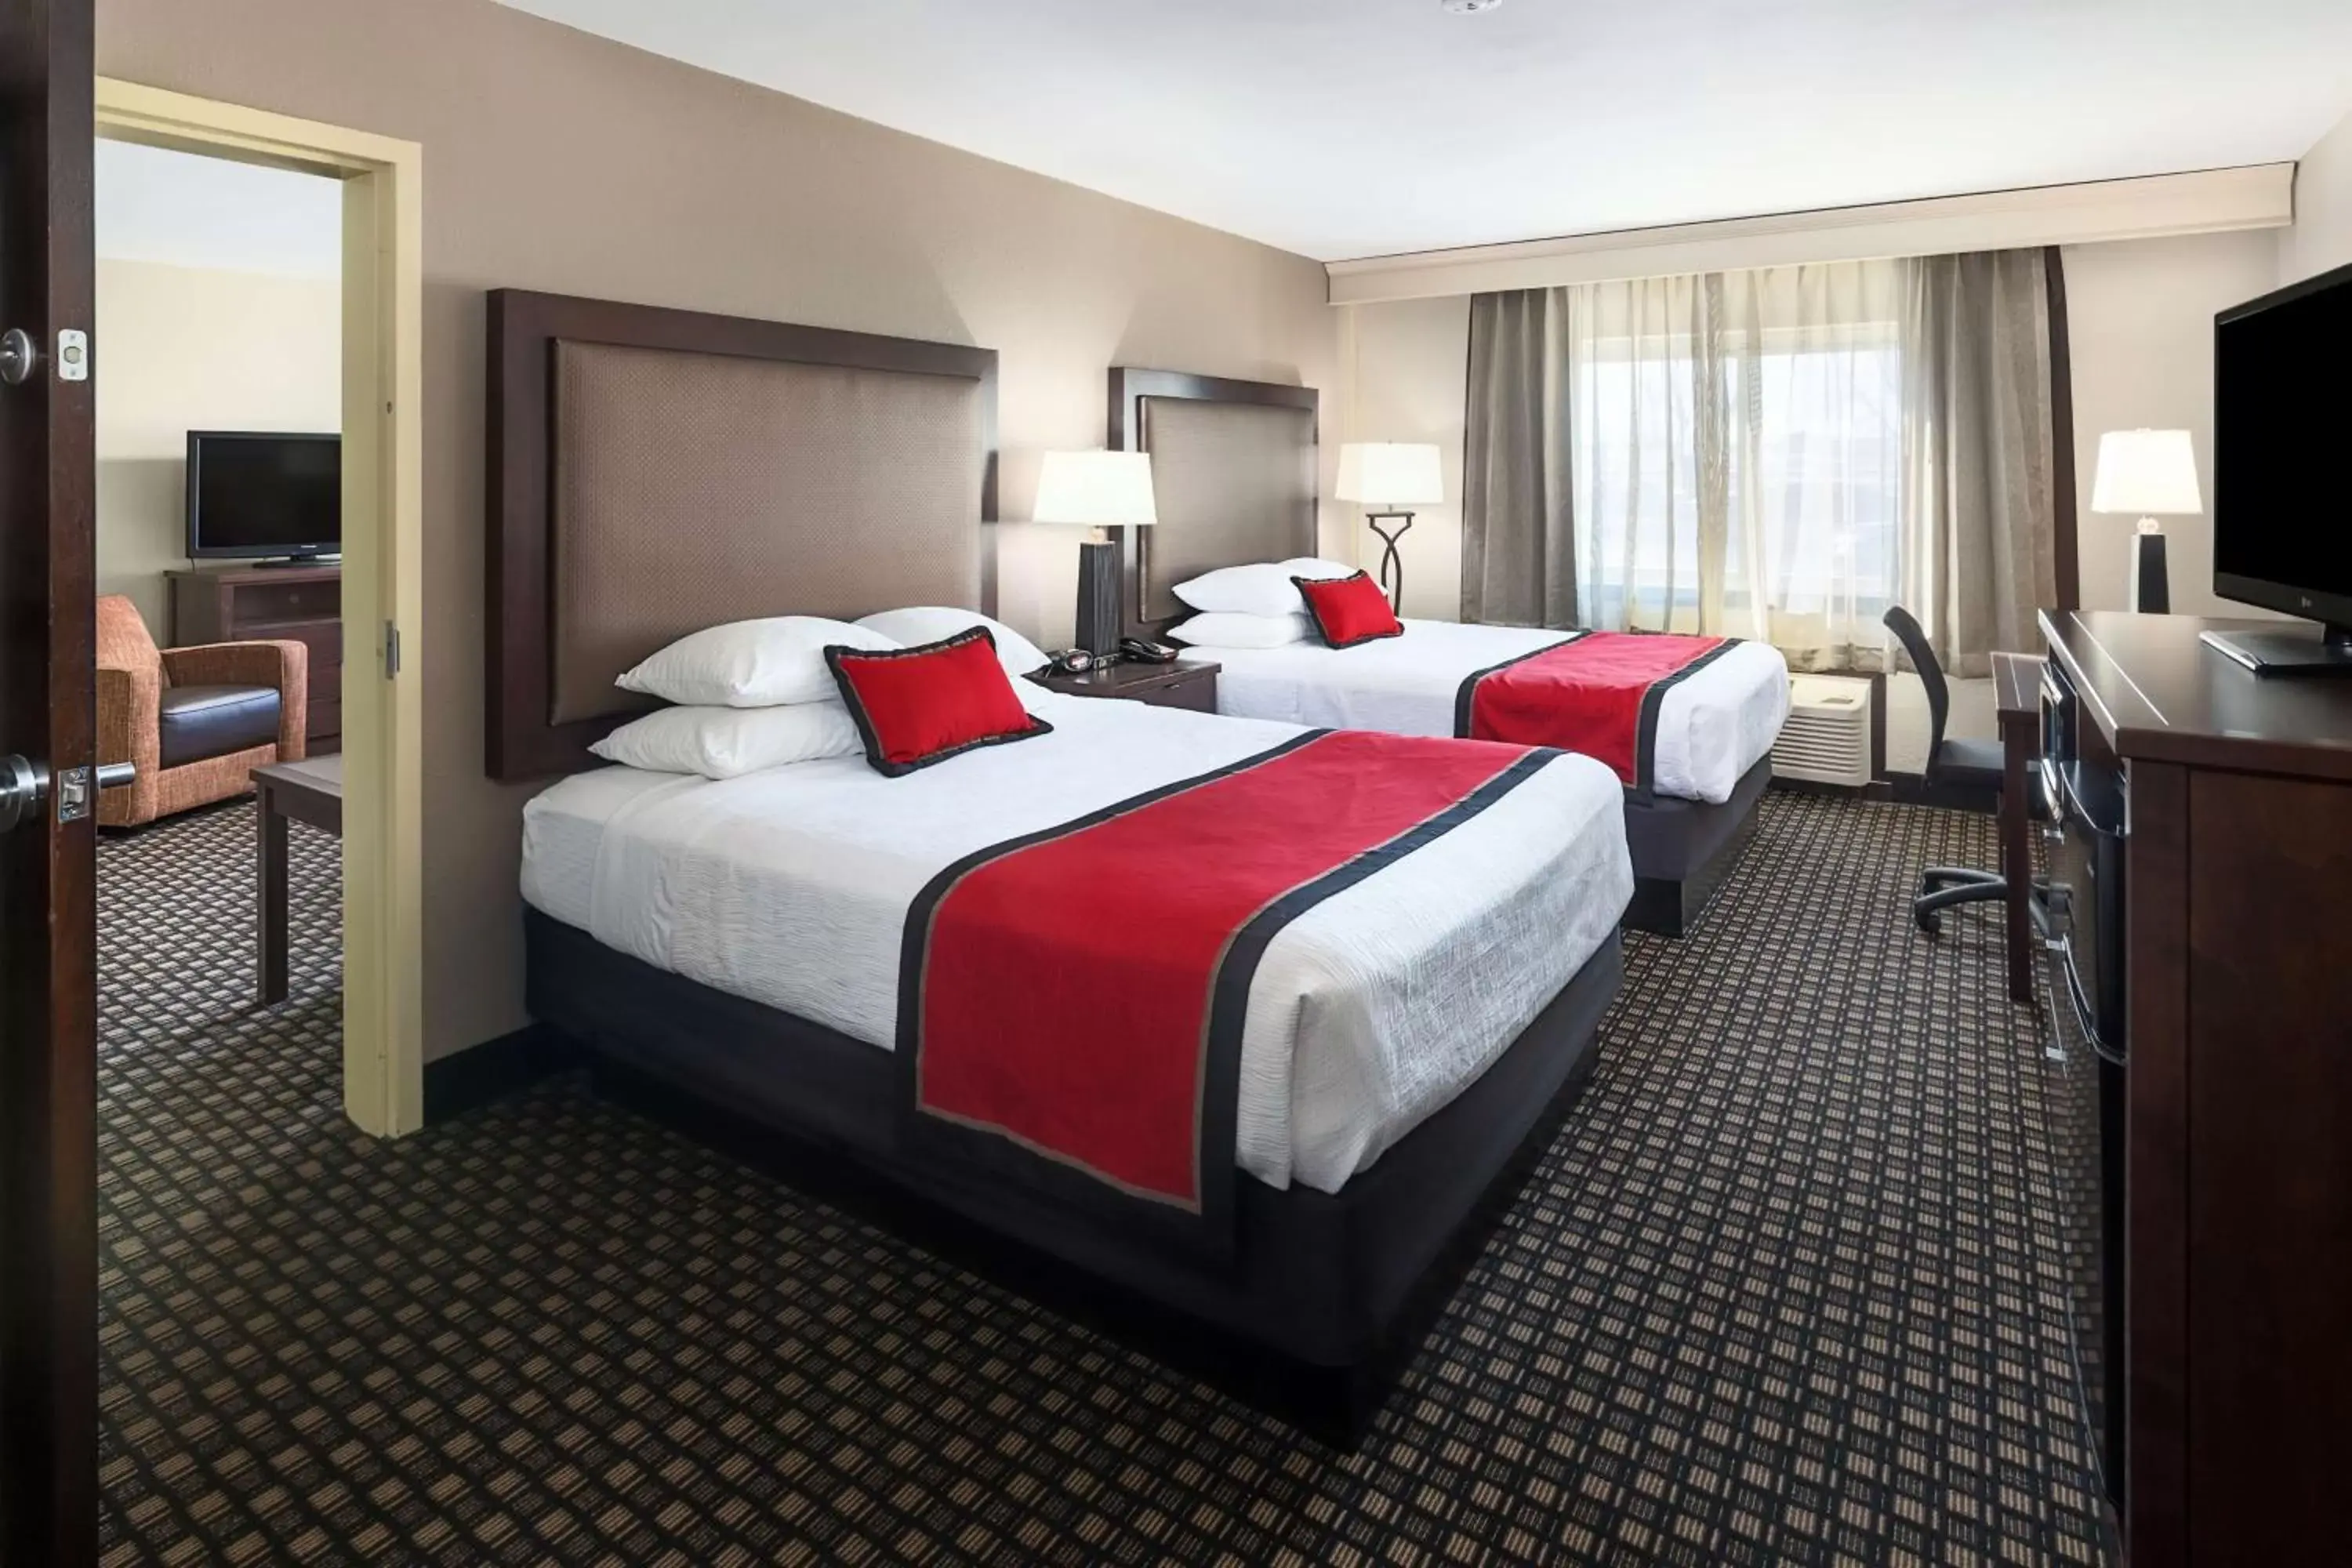 Bedroom, Bed in Best Western Plus Ramkota Hotel